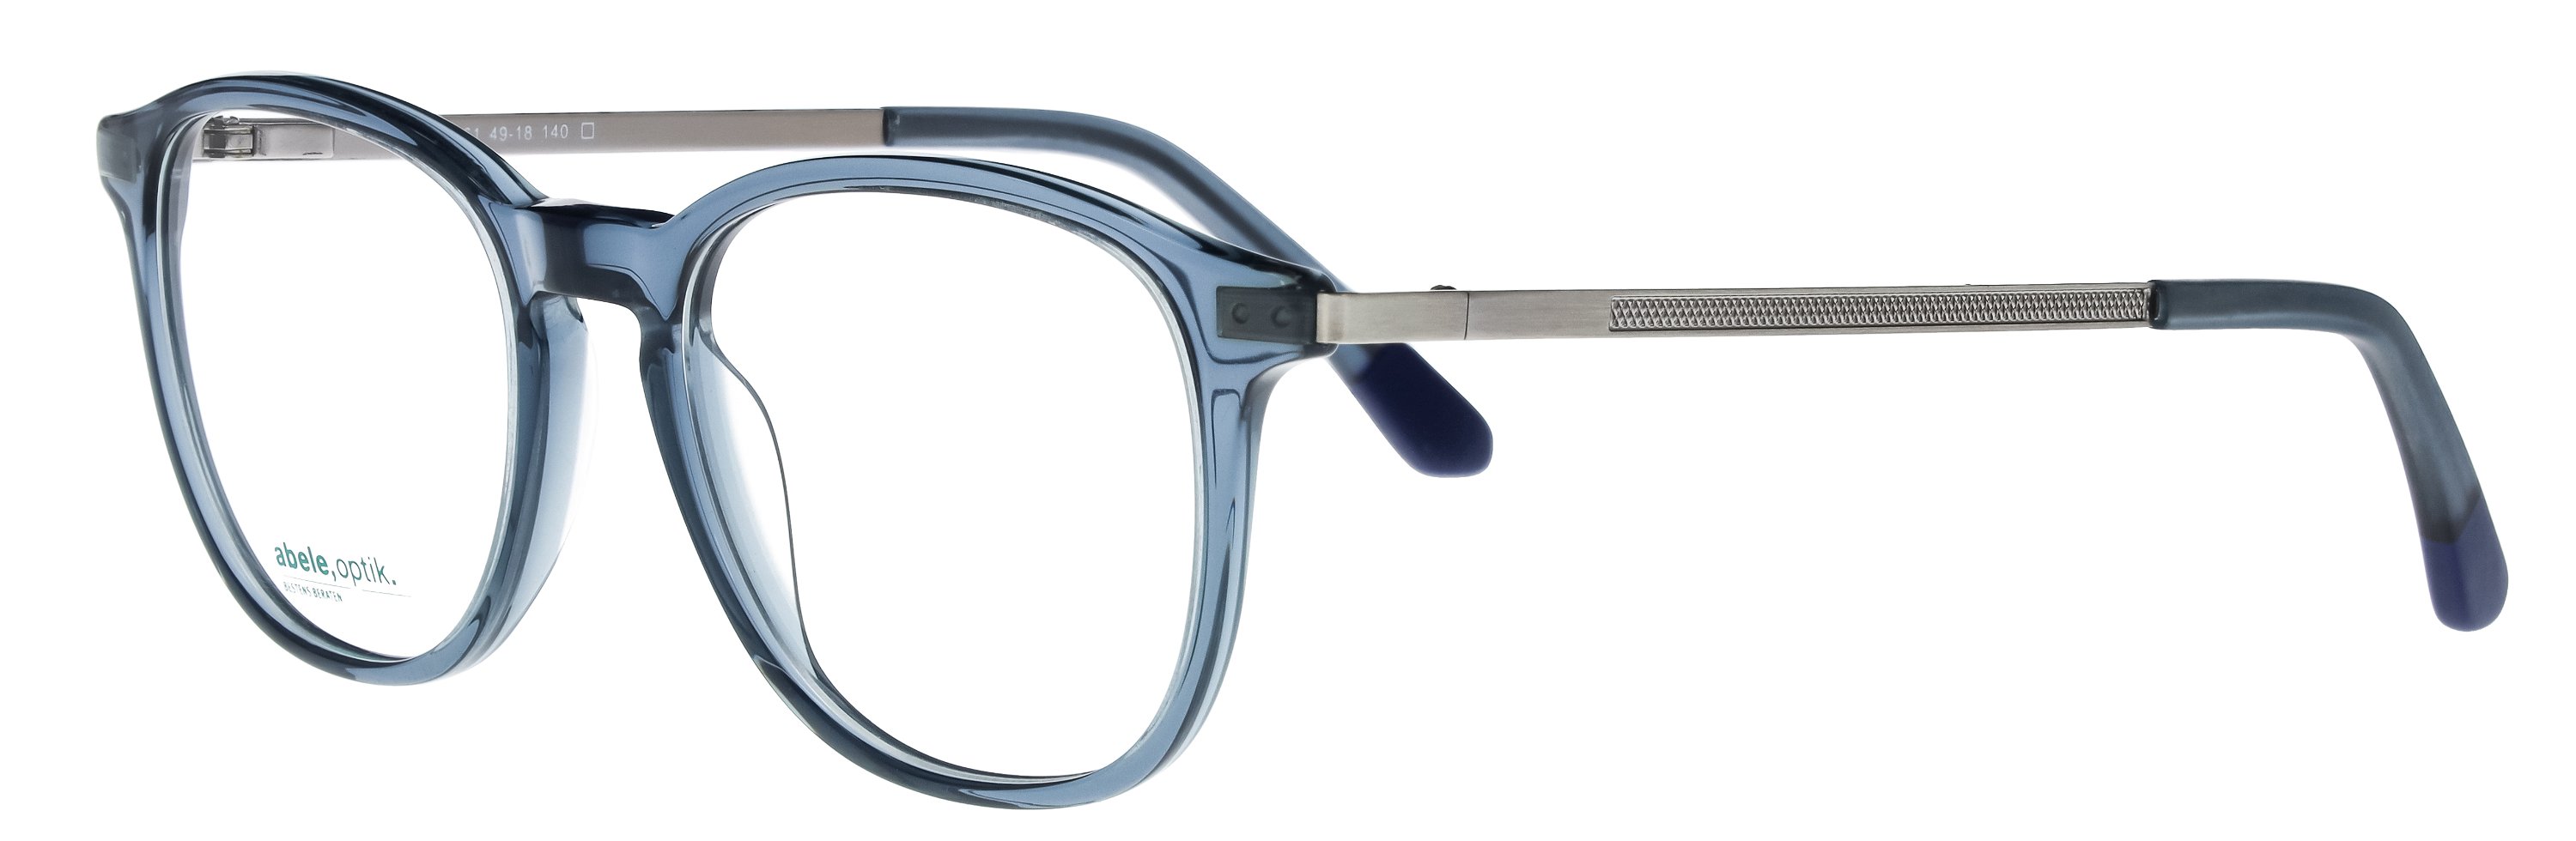 Das Bild zeigt die Korrektionsbrille 144661 von der Marke Abele Optik in blau transparent.